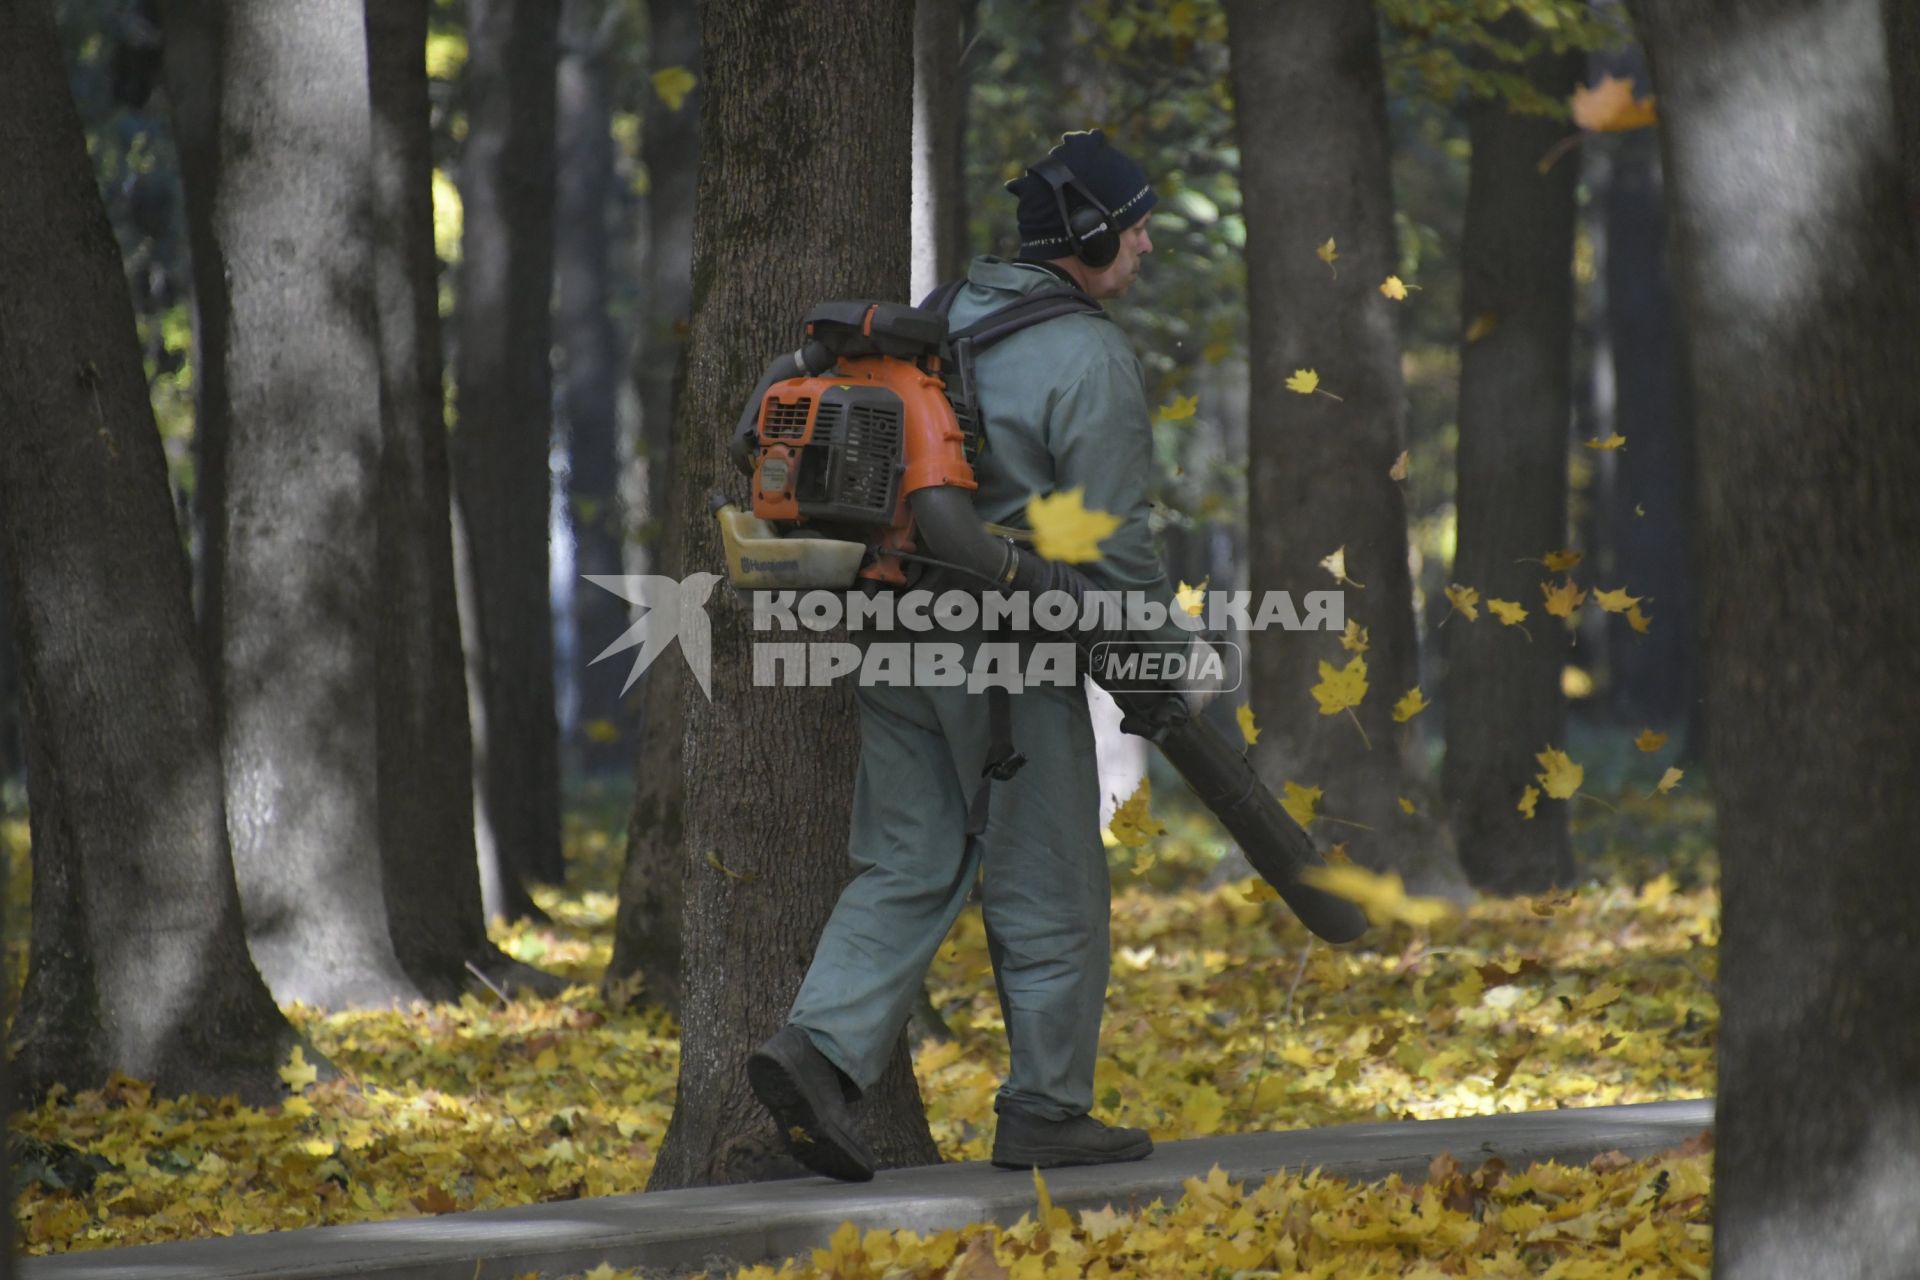 Тула. Сотрудник коммунальных служб раздувает опавшие листья в парке.